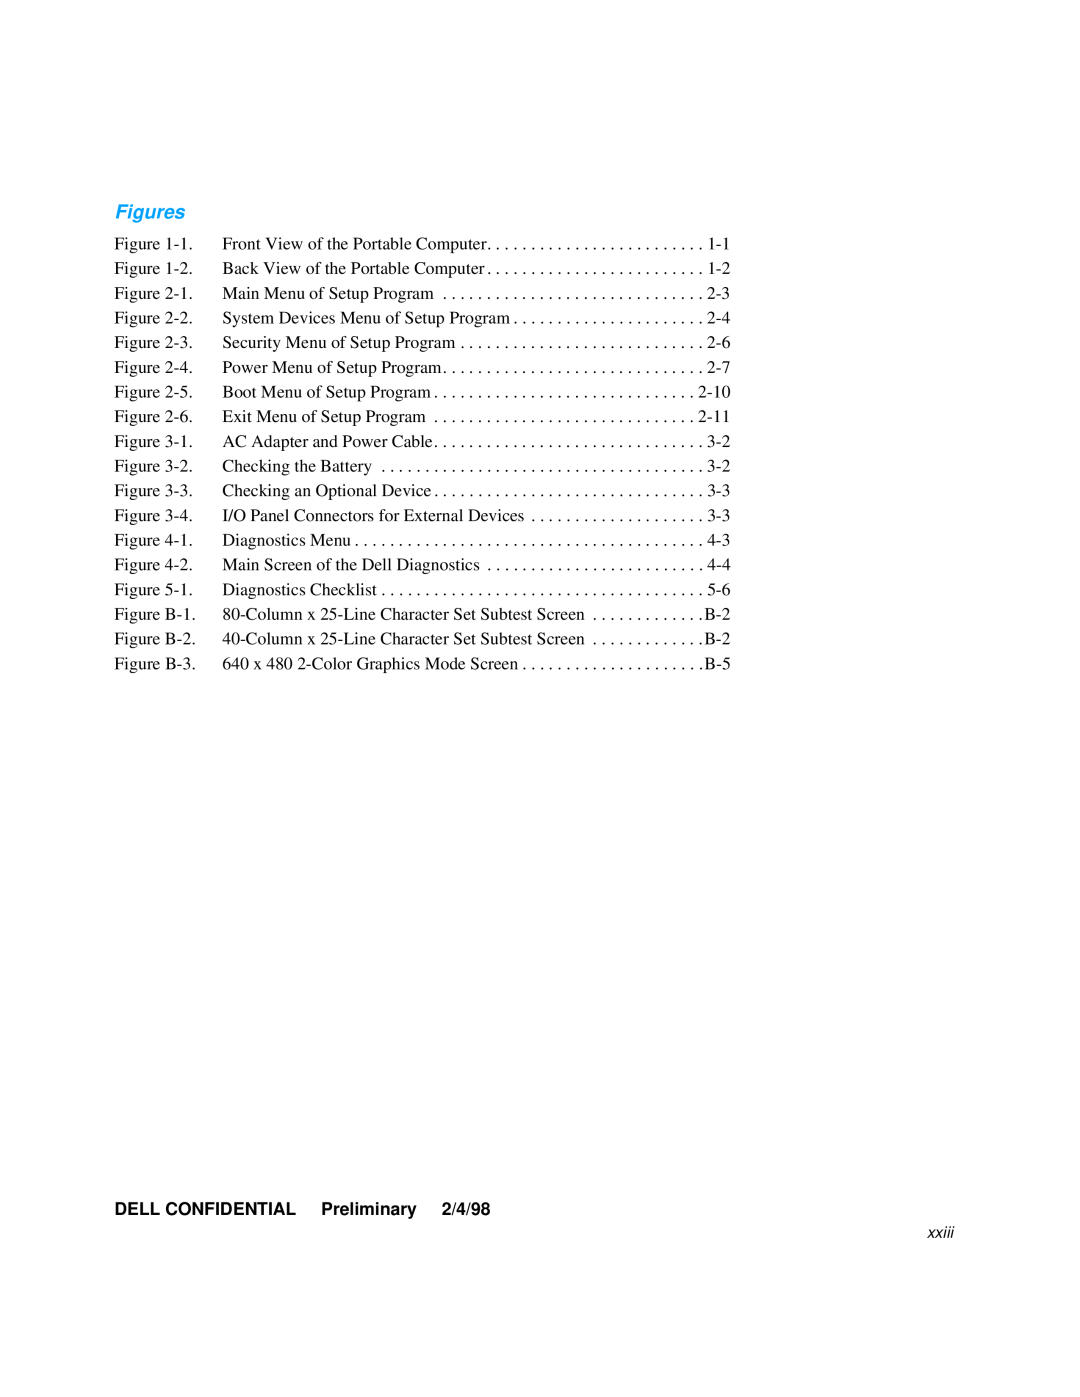 Dell 3000 manual DELL CONFIDENTIAL Preliminary 2/4/98, Figures 